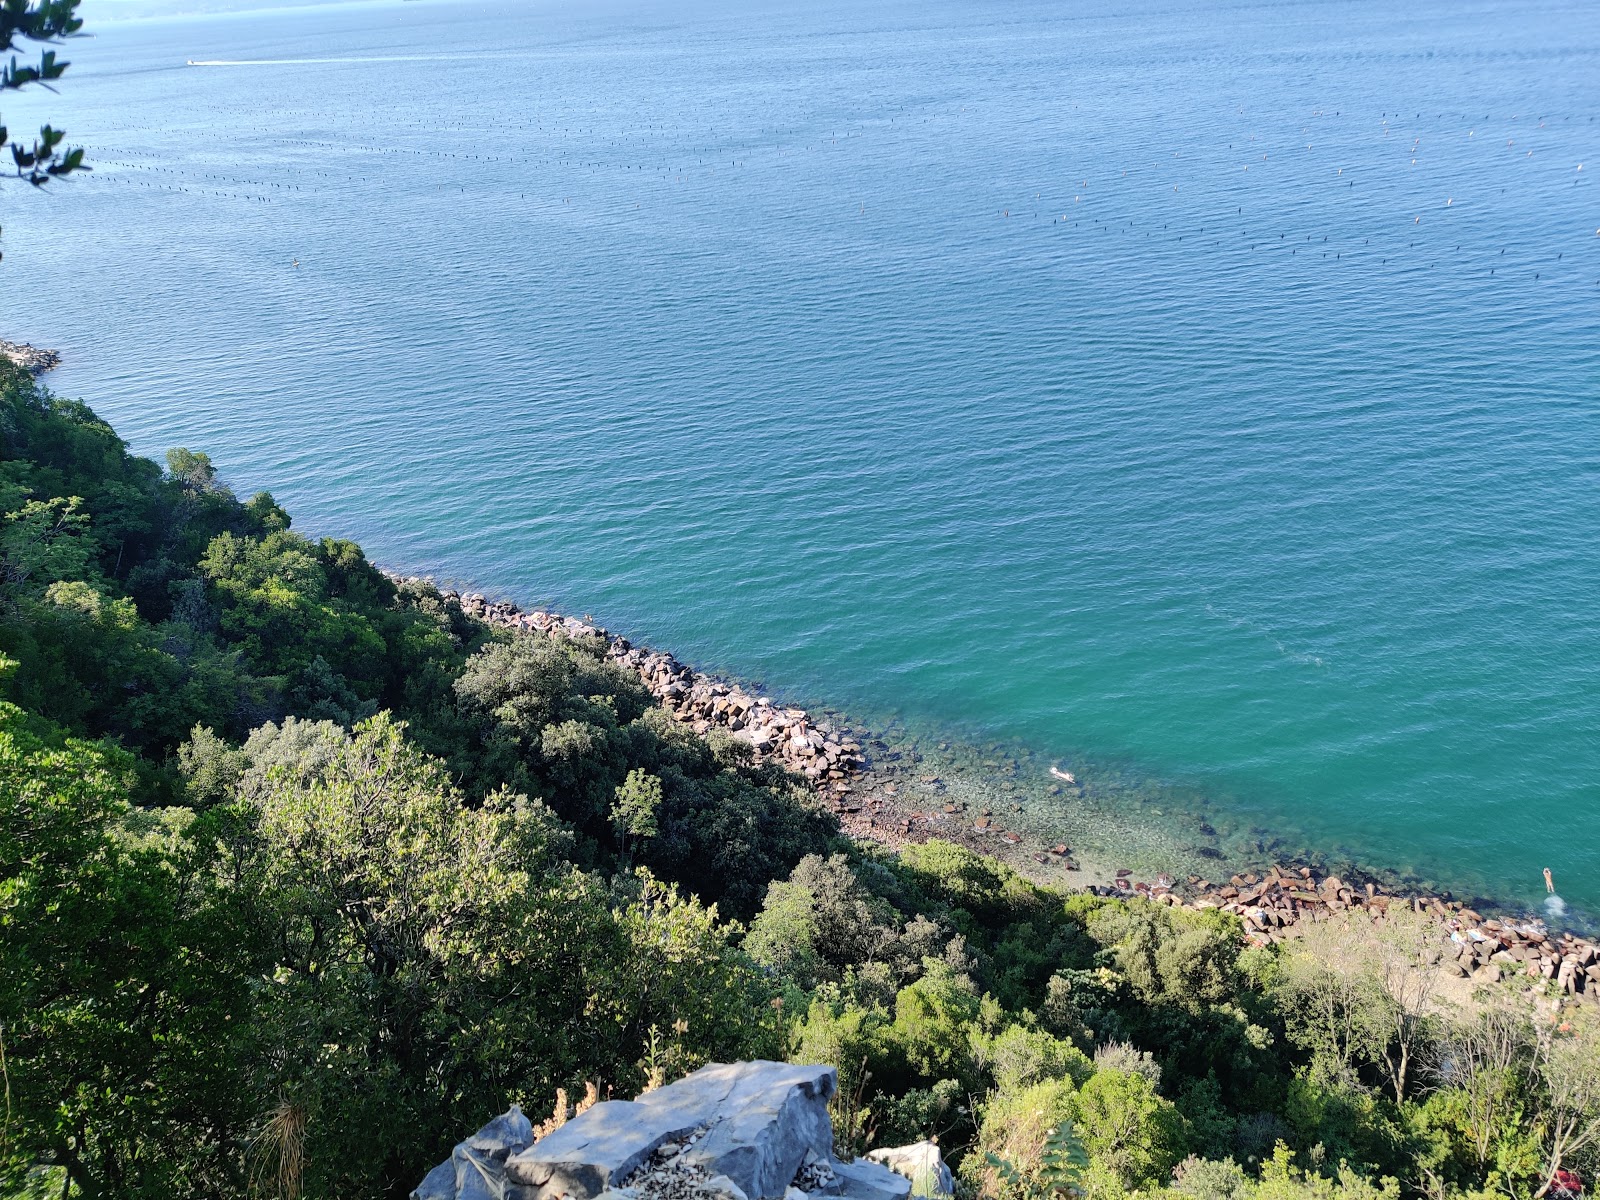 Photo of Spiaggia dei Filtri FKK located in natural area